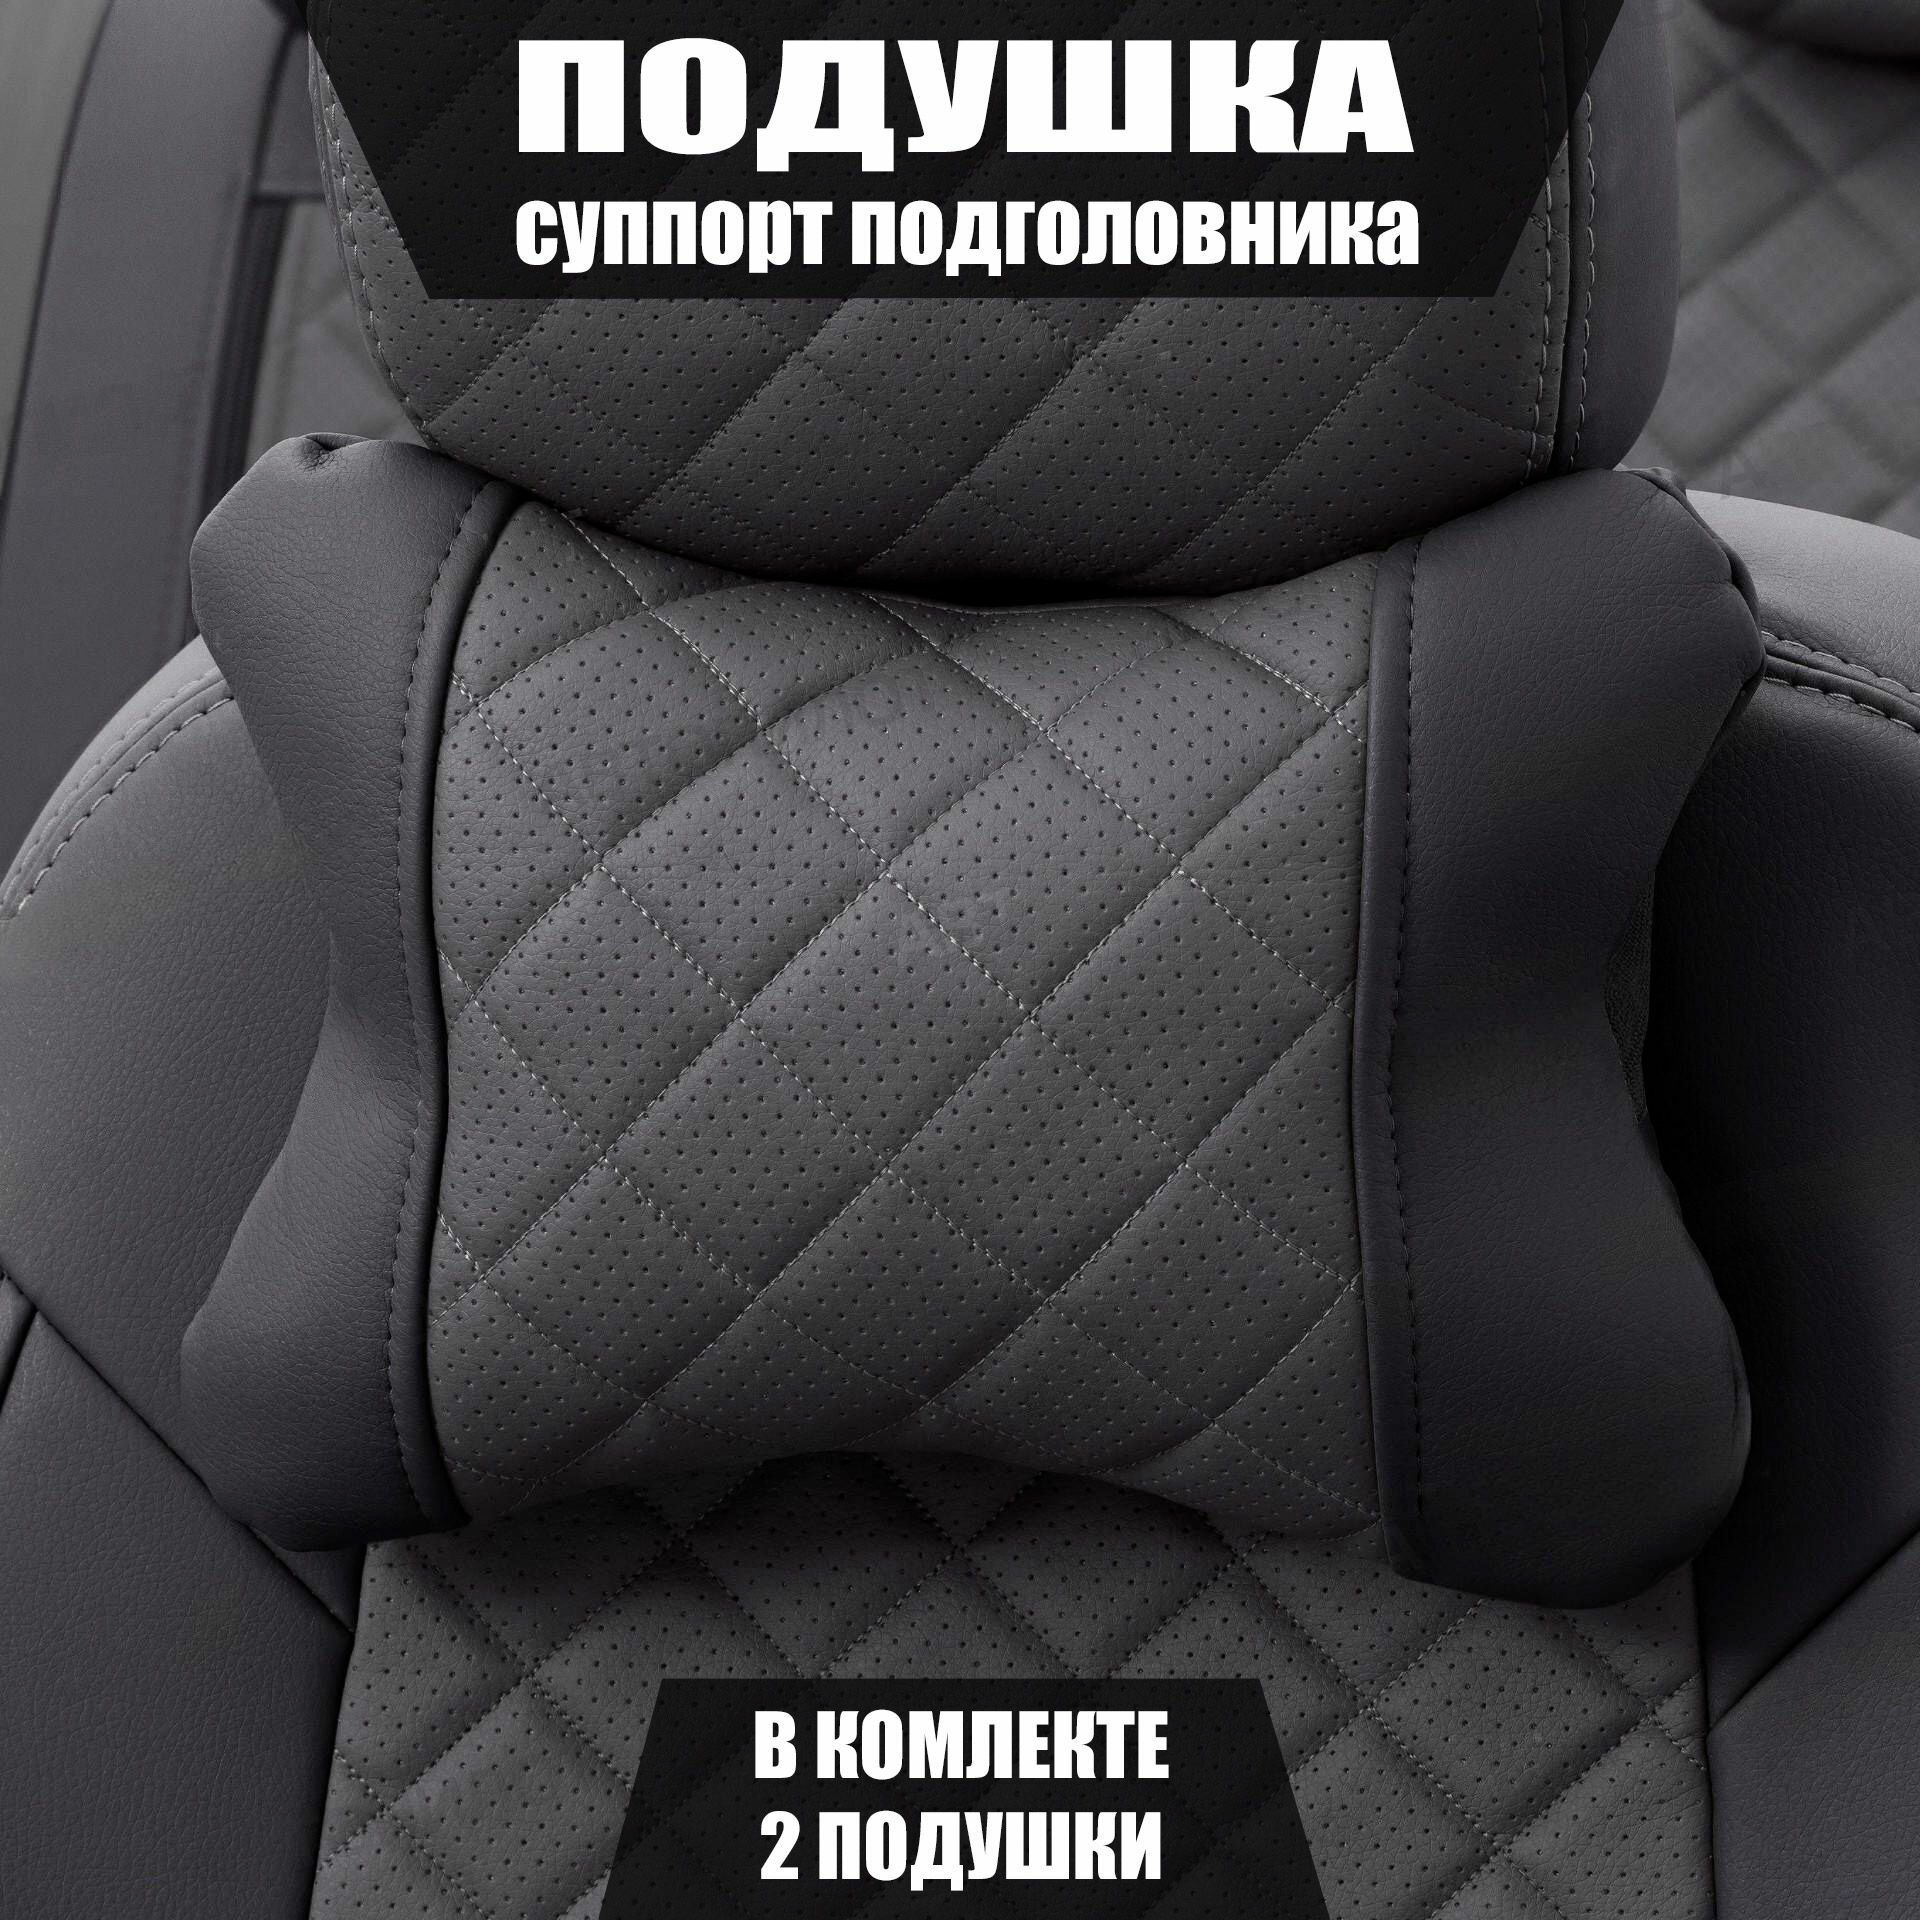 Подушки под шею (суппорт подголовника) для Хендай Элантра (2015 - 2019) хэтчбек 5 дверей / Hyundai Elantra Ромб Экокожа 2 подушки Черный